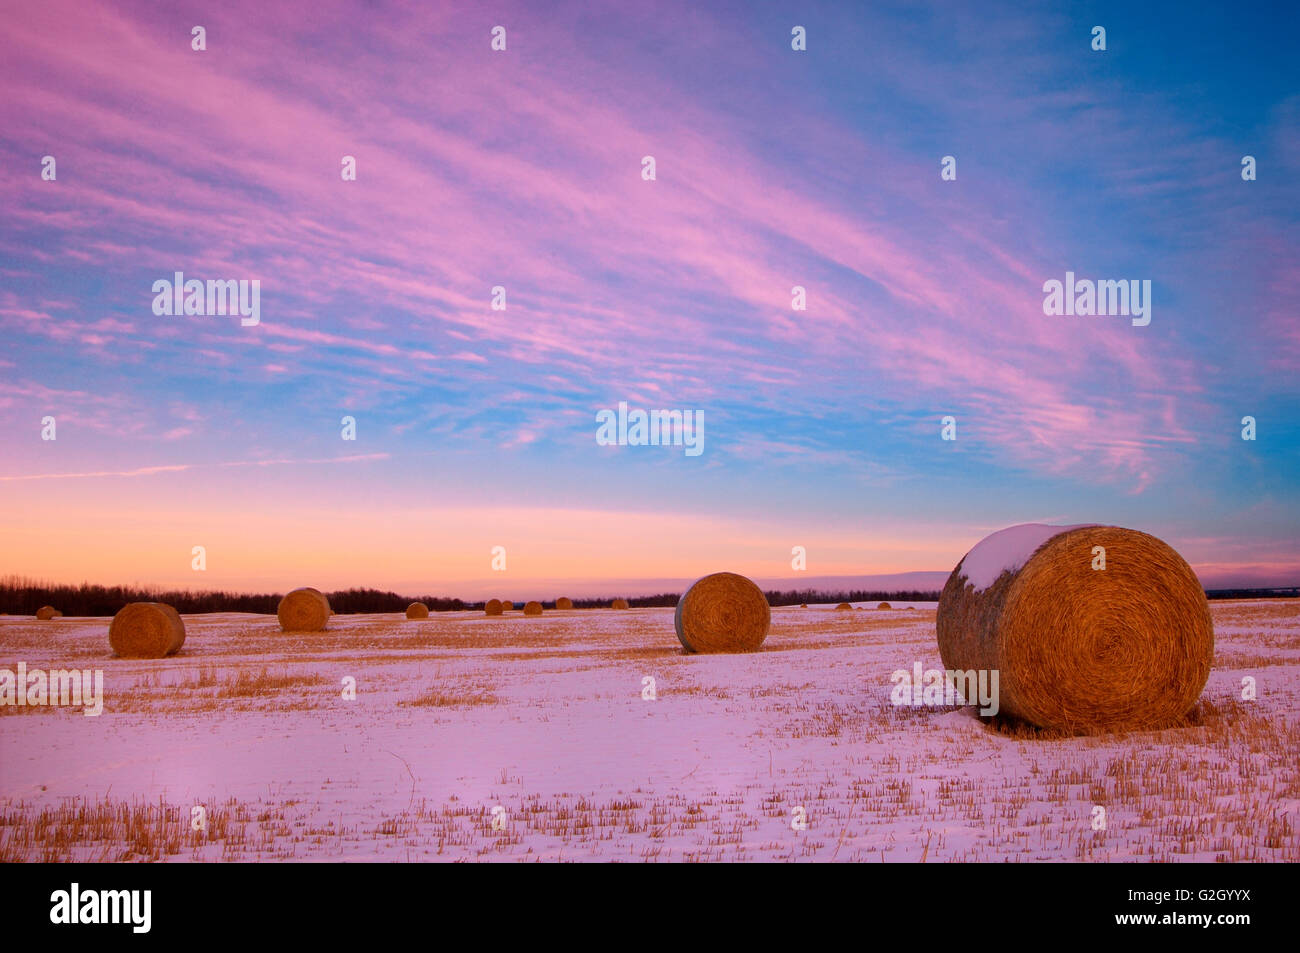 Les balles et les nuages au coucher du soleil, Stony Plain, Alberta, Canada Banque D'Images